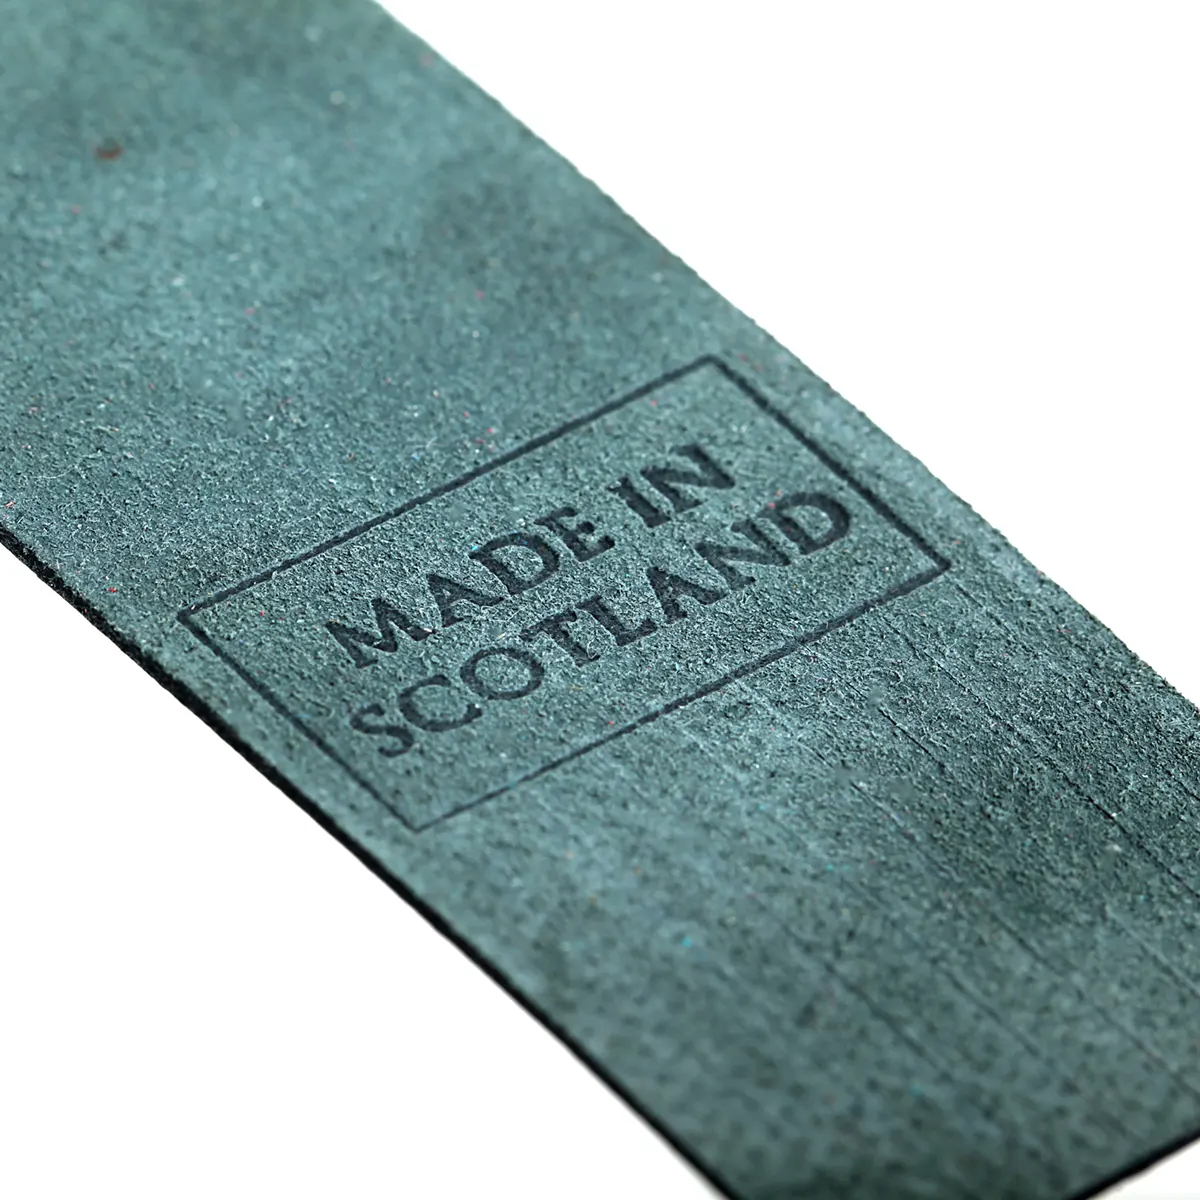 Inverness - Lesezeichen aus Leder in Dunkelgrün - Made in Scotland